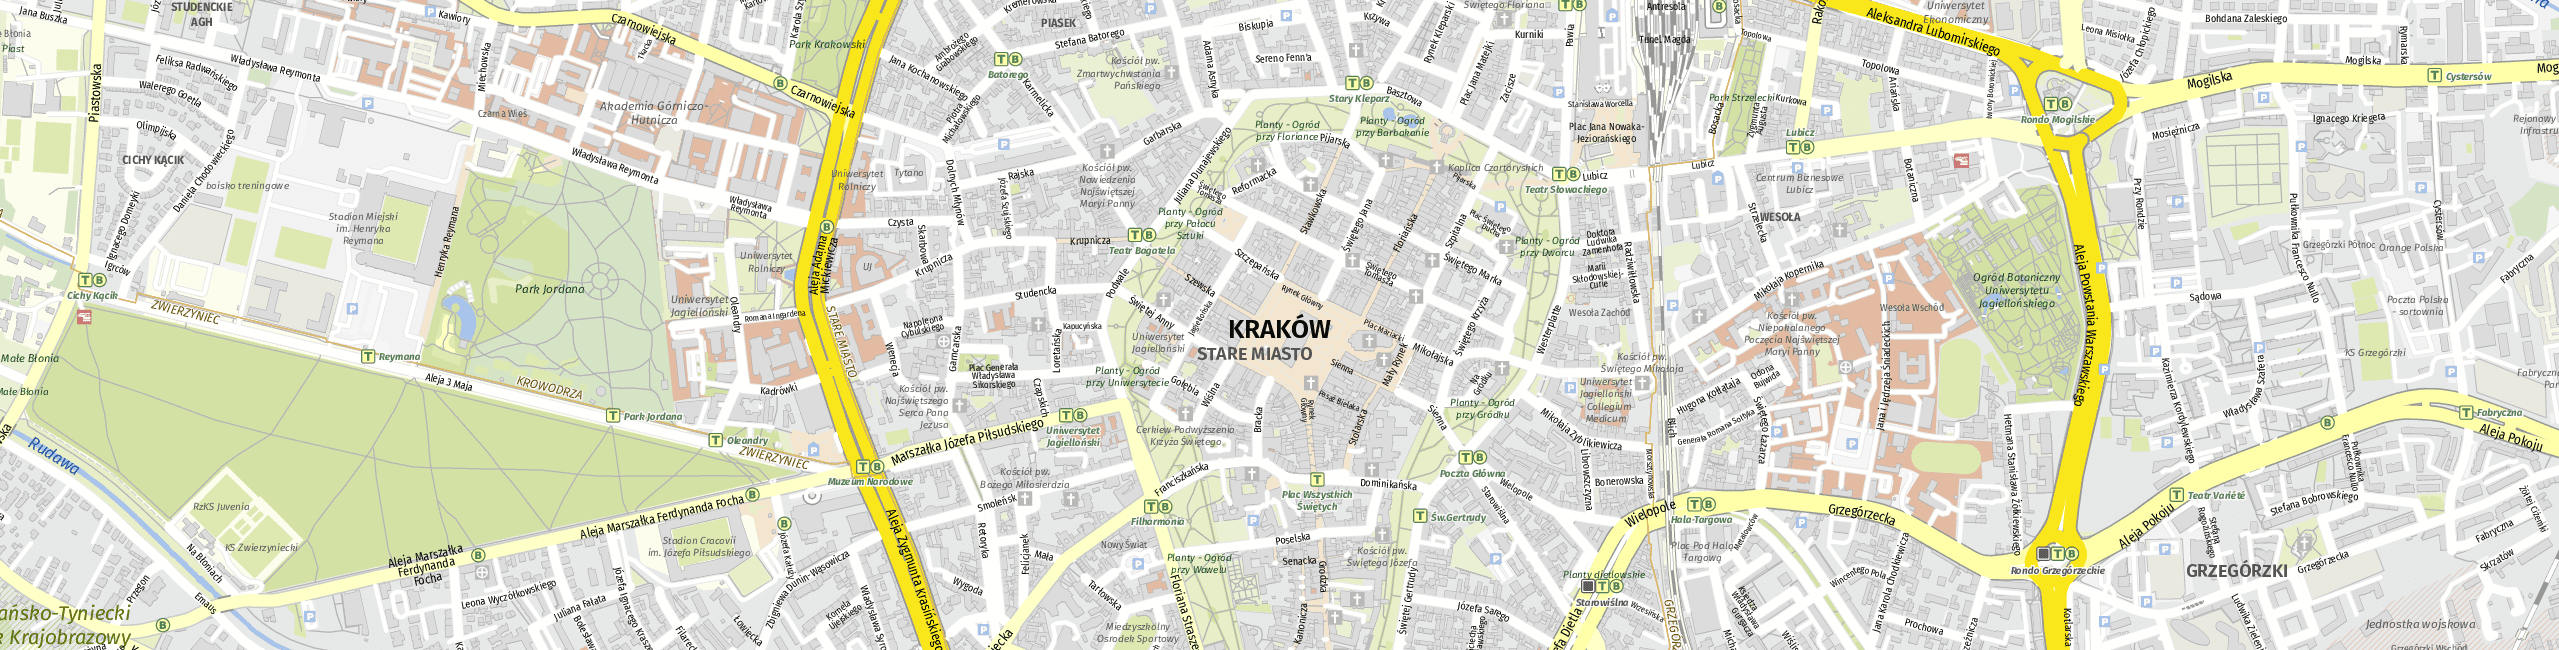 Stadtplan Krakau zum Downloaden.